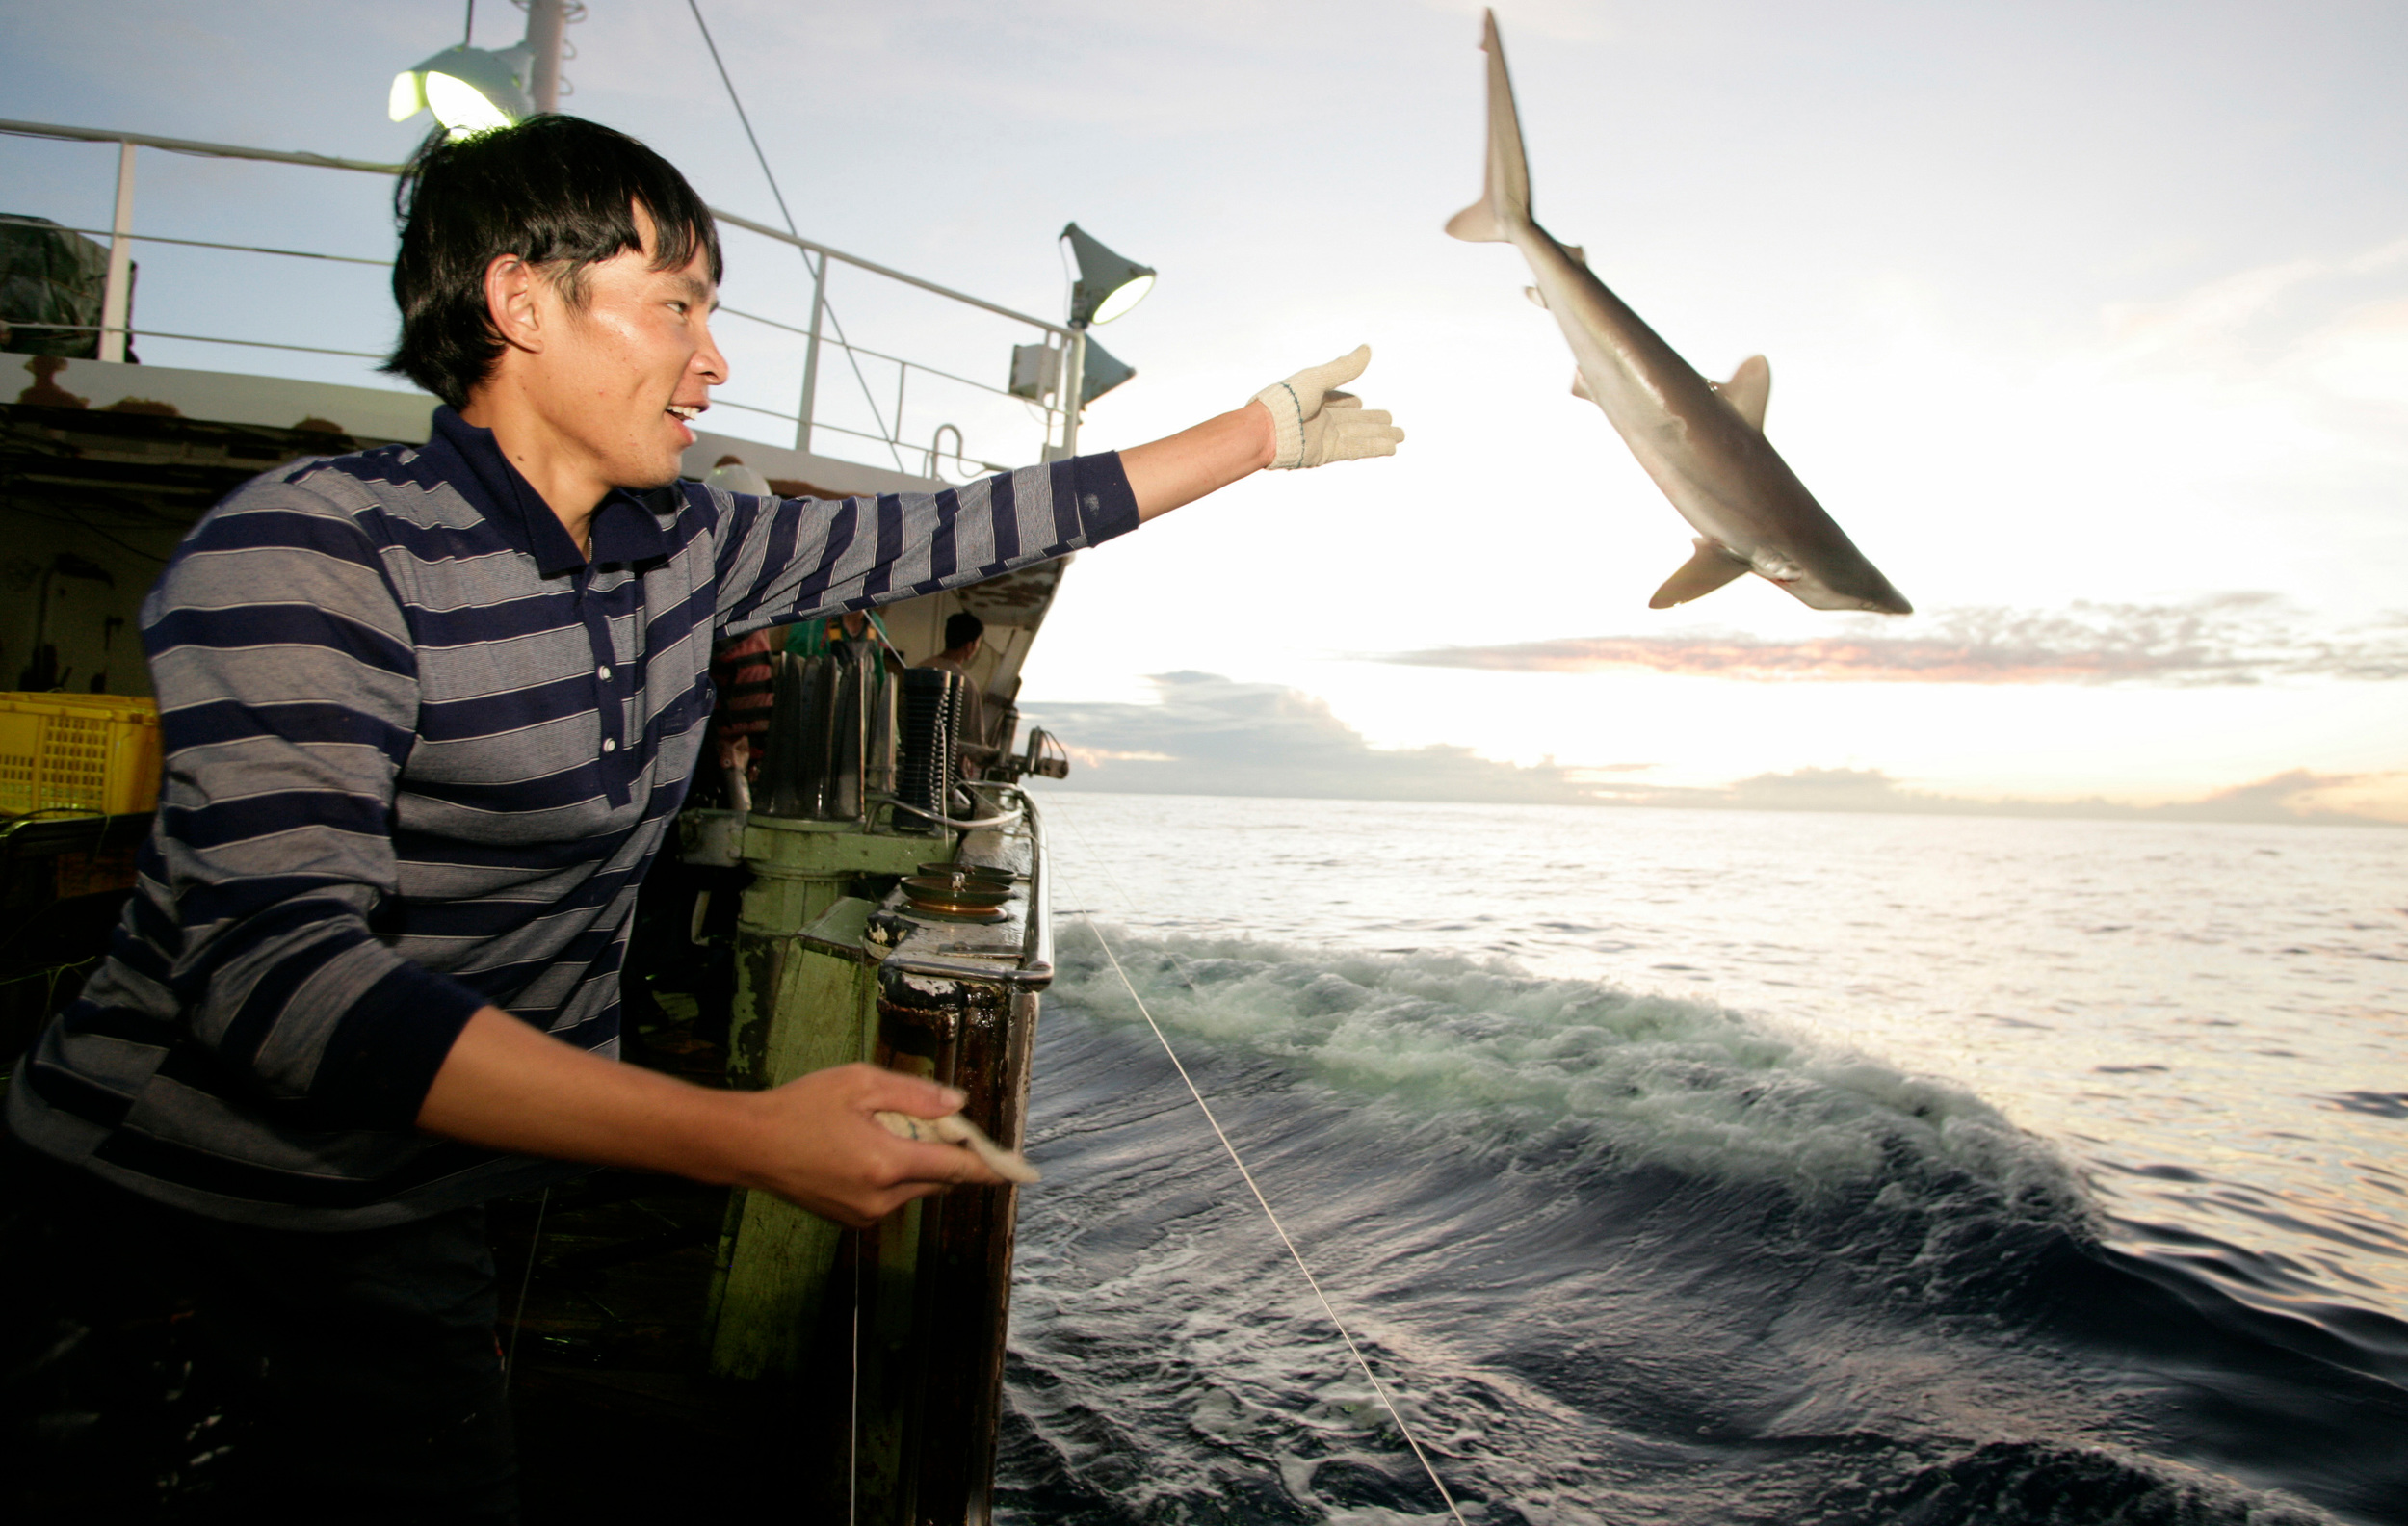 pescatore lancia uno squalo dalla nave